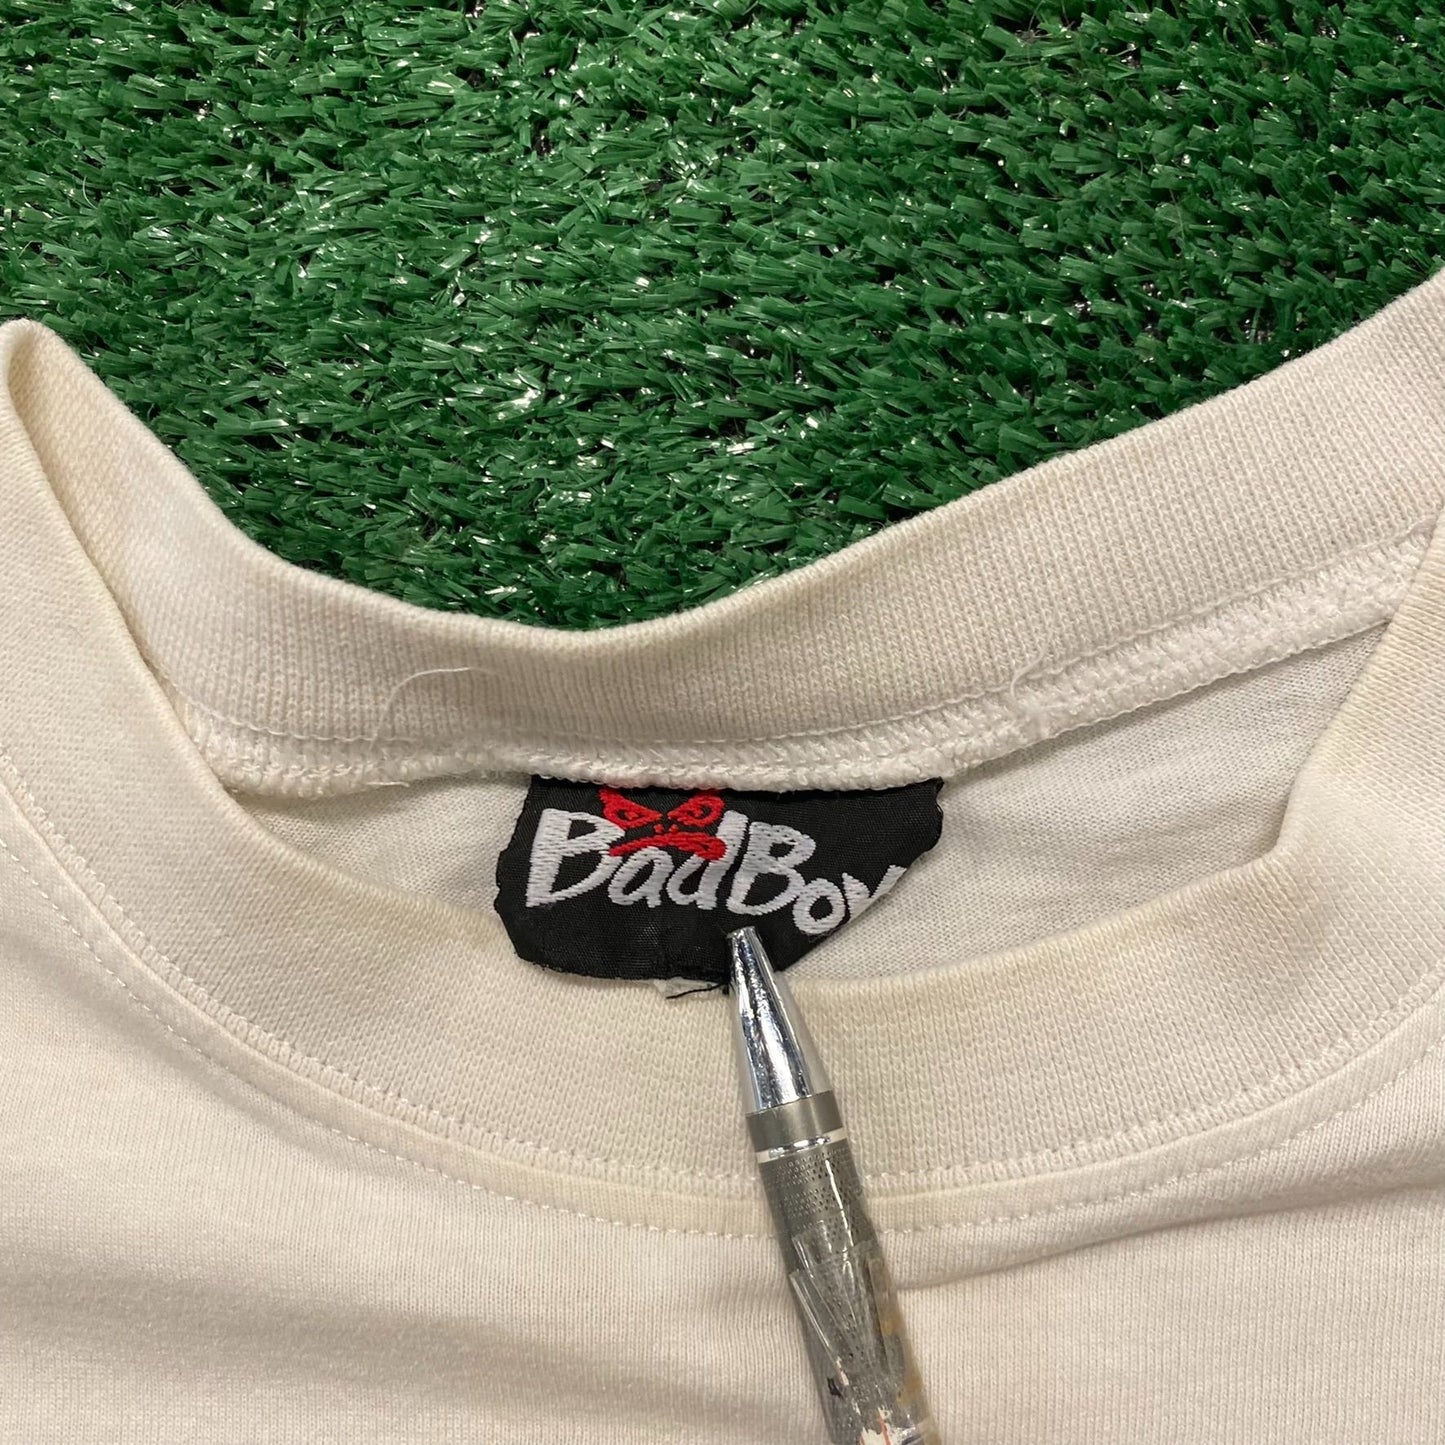 Bad Boy Bones Face Vintage 90s Skater Punk T-Shirt